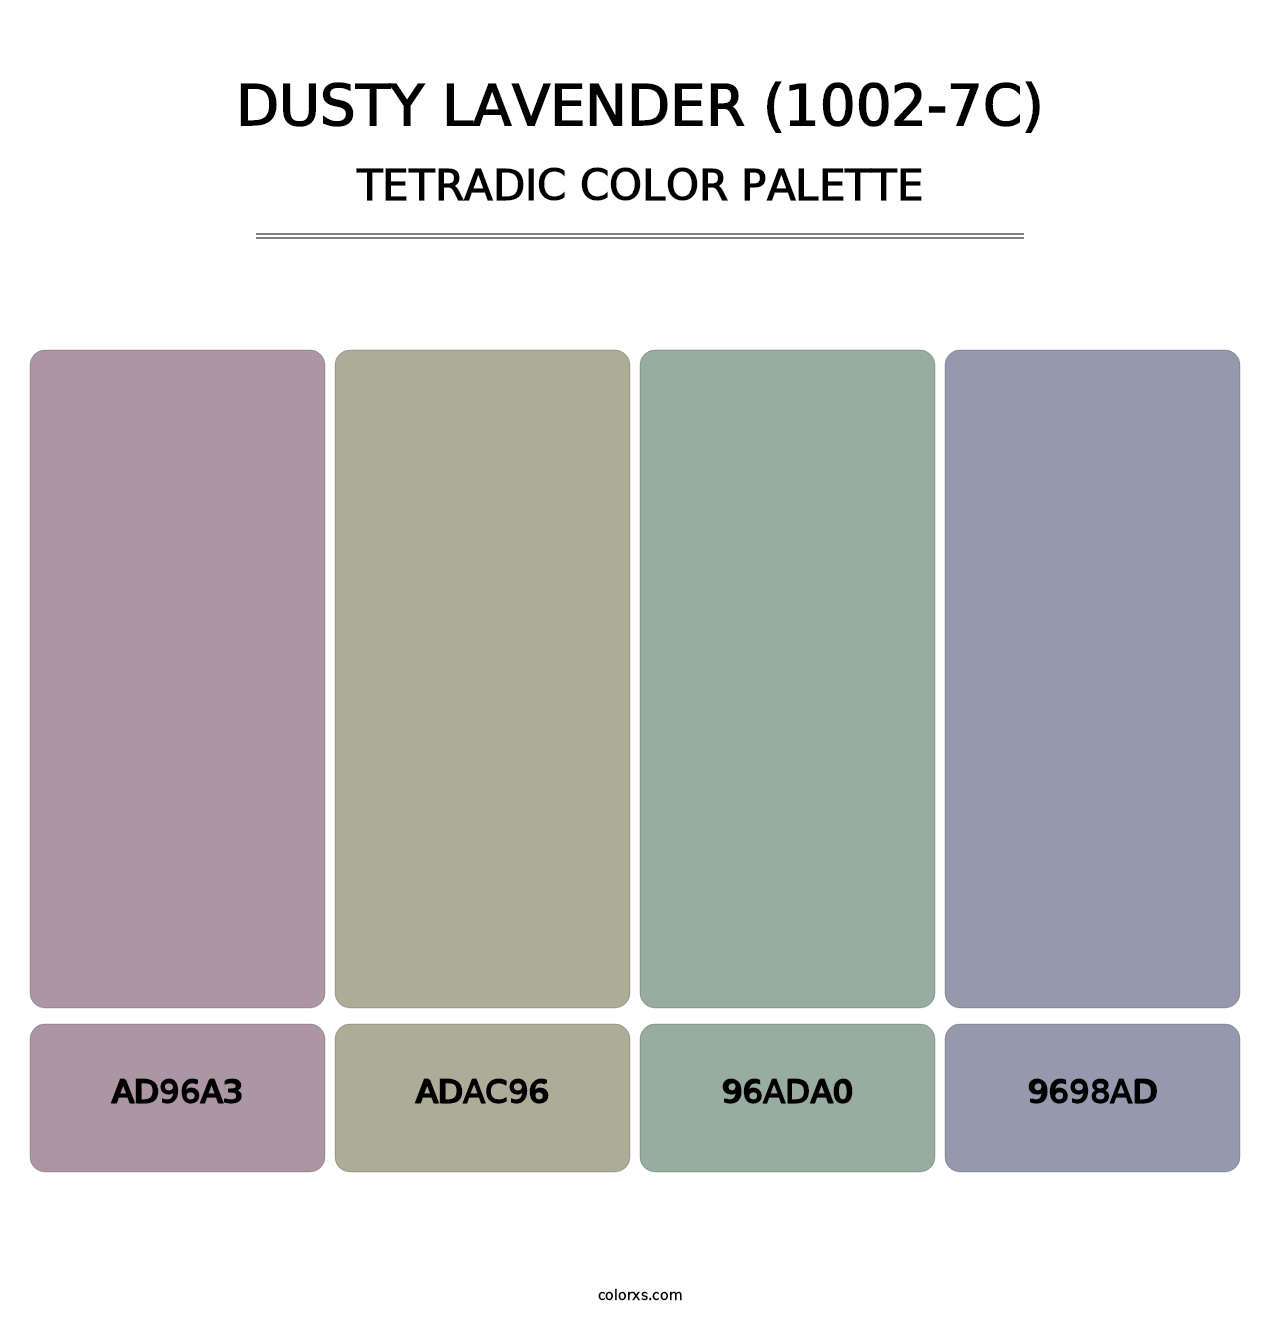 Dusty Lavender (1002-7C) - Tetradic Color Palette